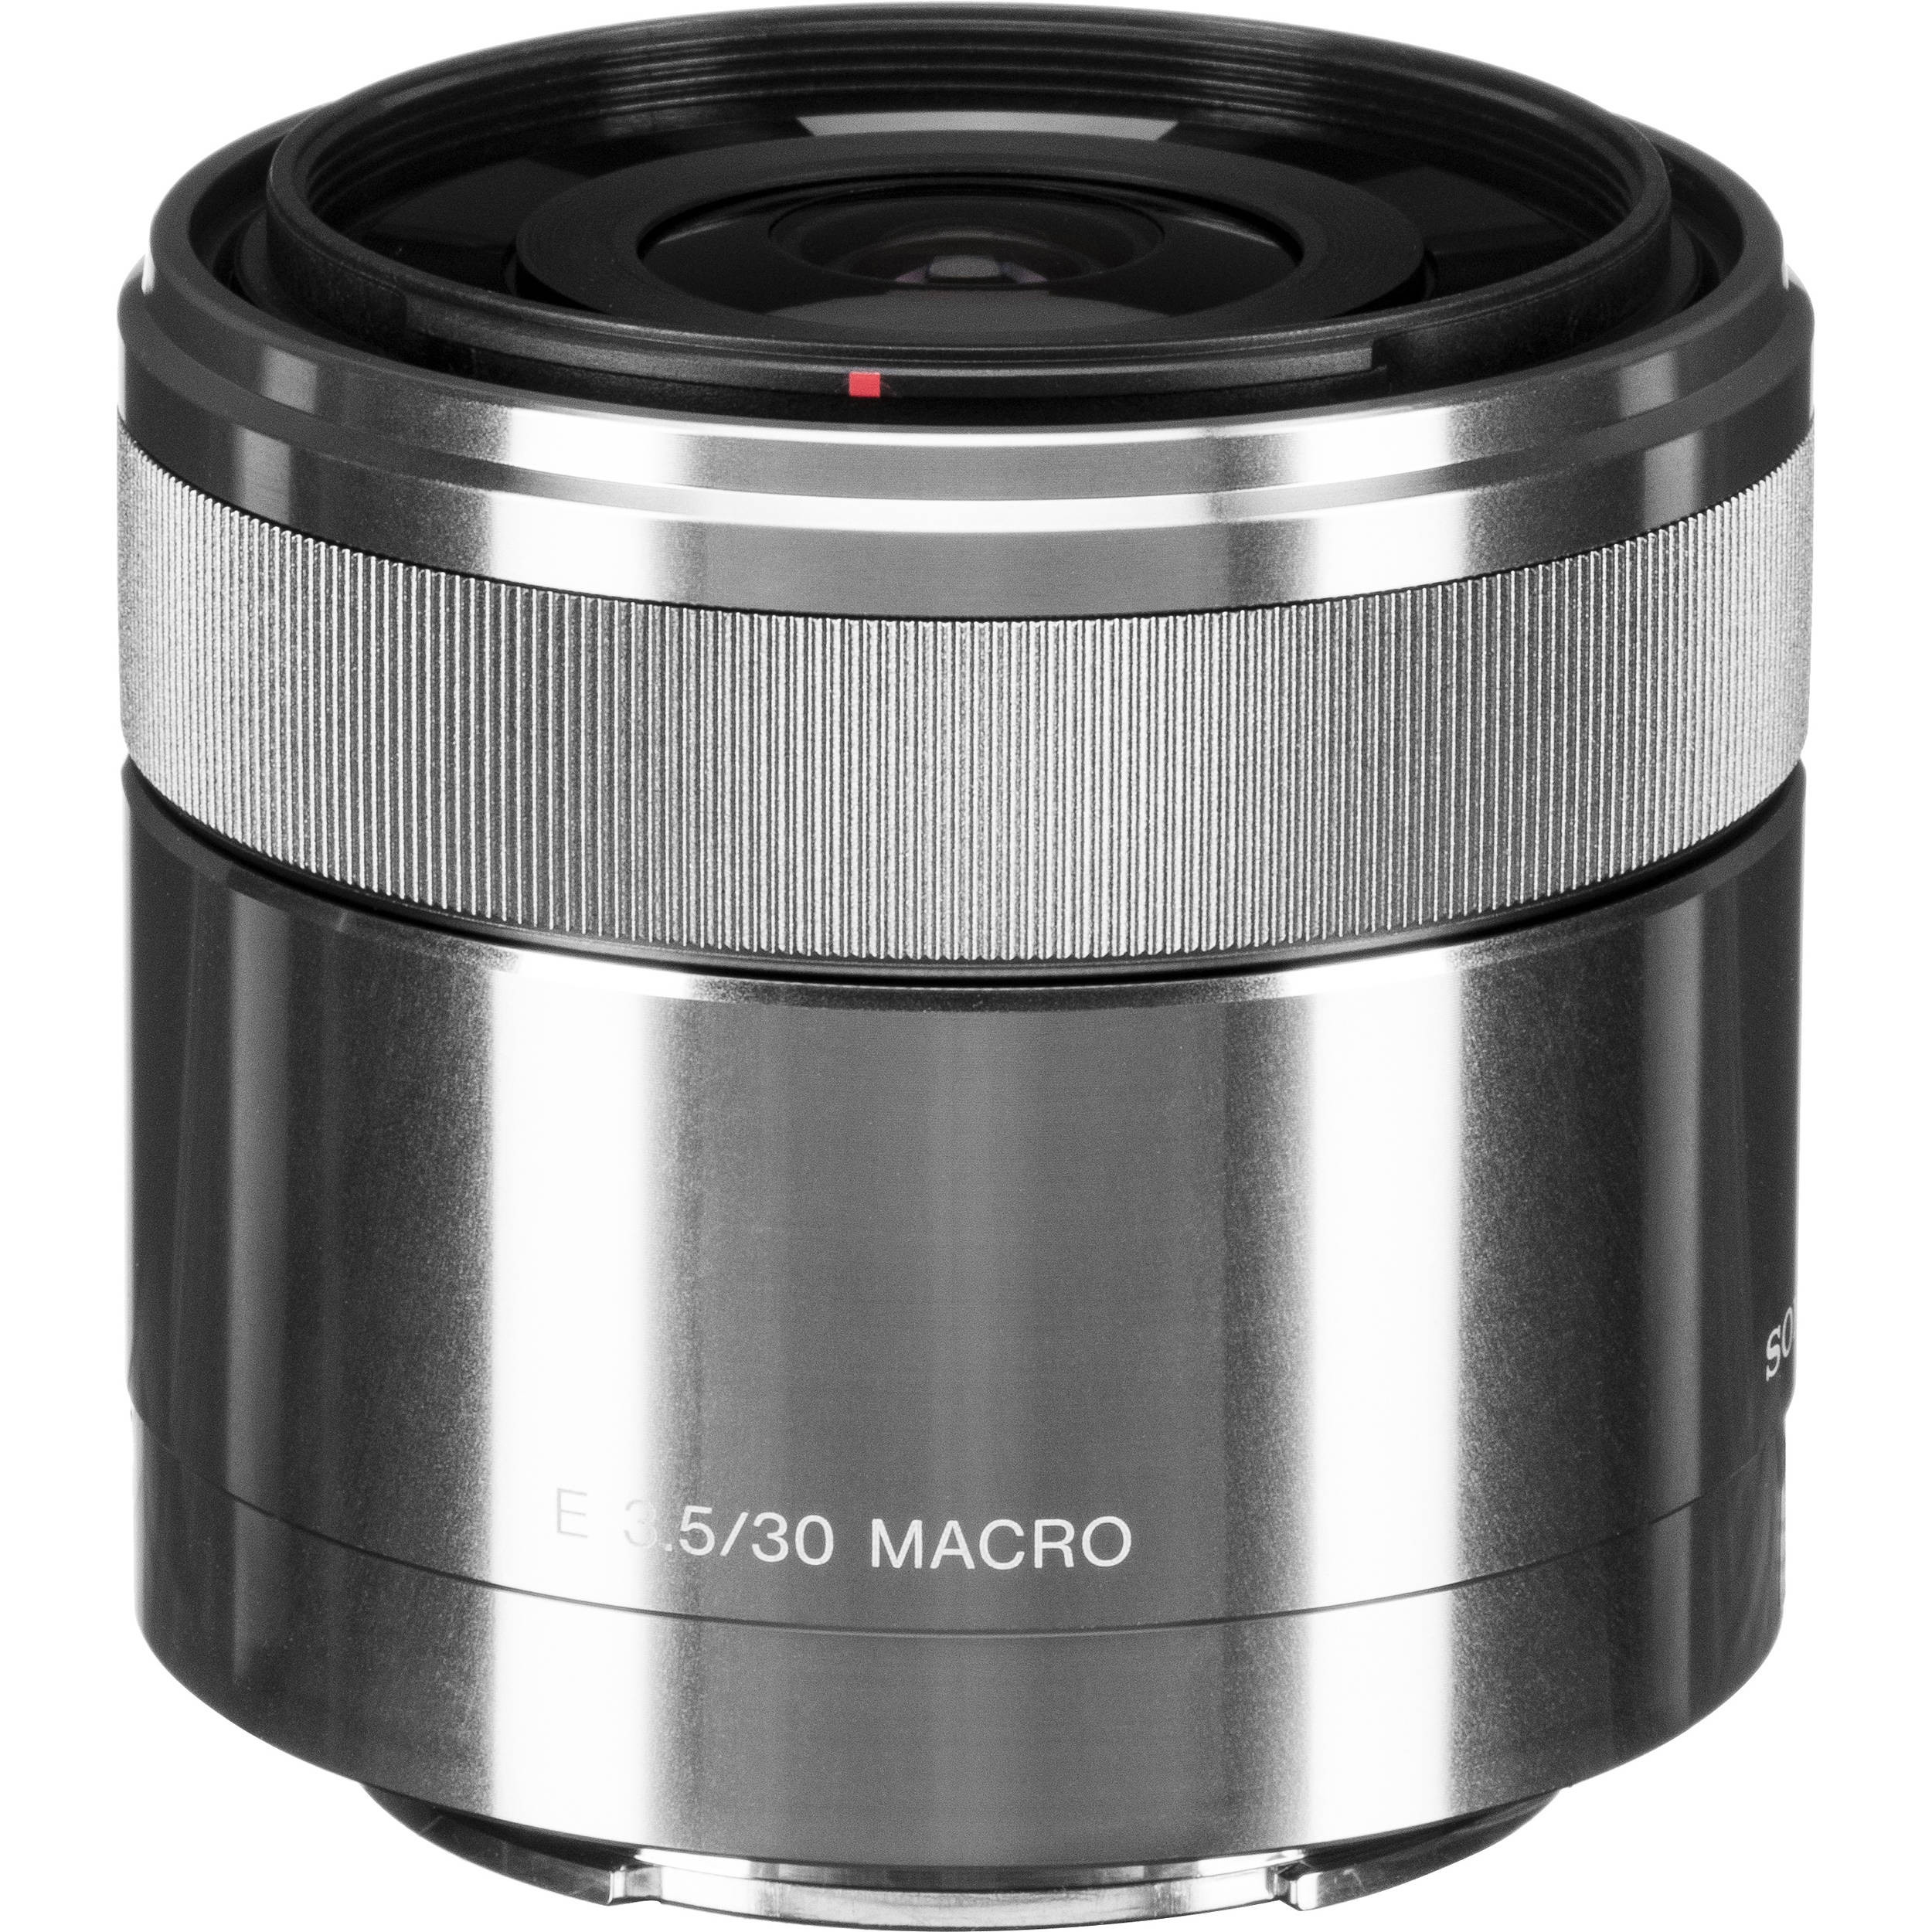 ソニー SEL30M35 Eマウント30mm F3.5 Macro - レンズ(単焦点)